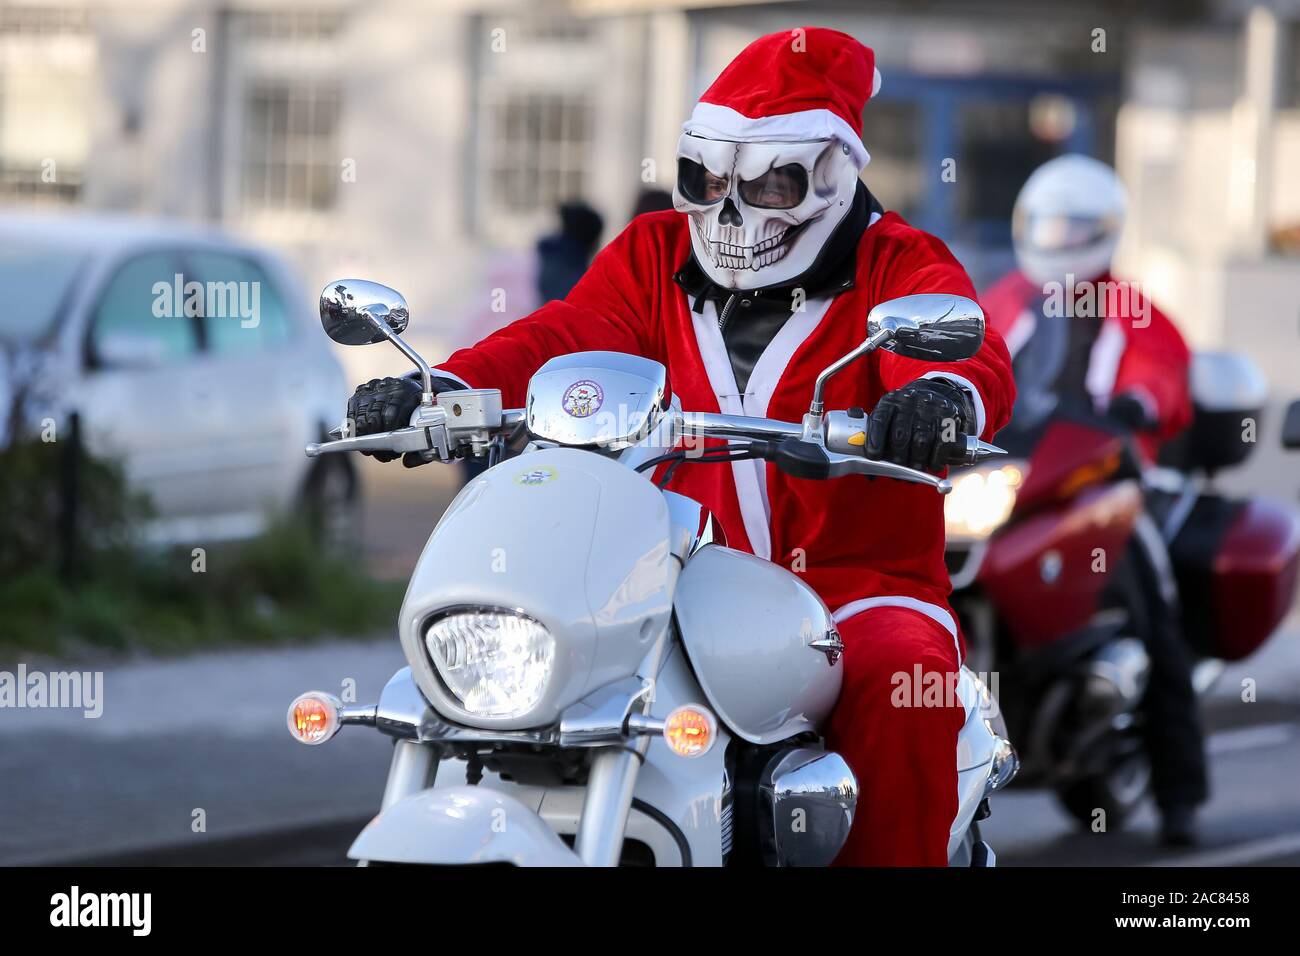 Viele Santa Fahrt auf dem Motorrad während der jährlichen massive Parade  von fast 2000 Reiter, die Geld für bedürftige Kinder ist für Weihnachten  Pakete und warme Mahlzeiten Spenden sammeln Stockfotografie - Alamy